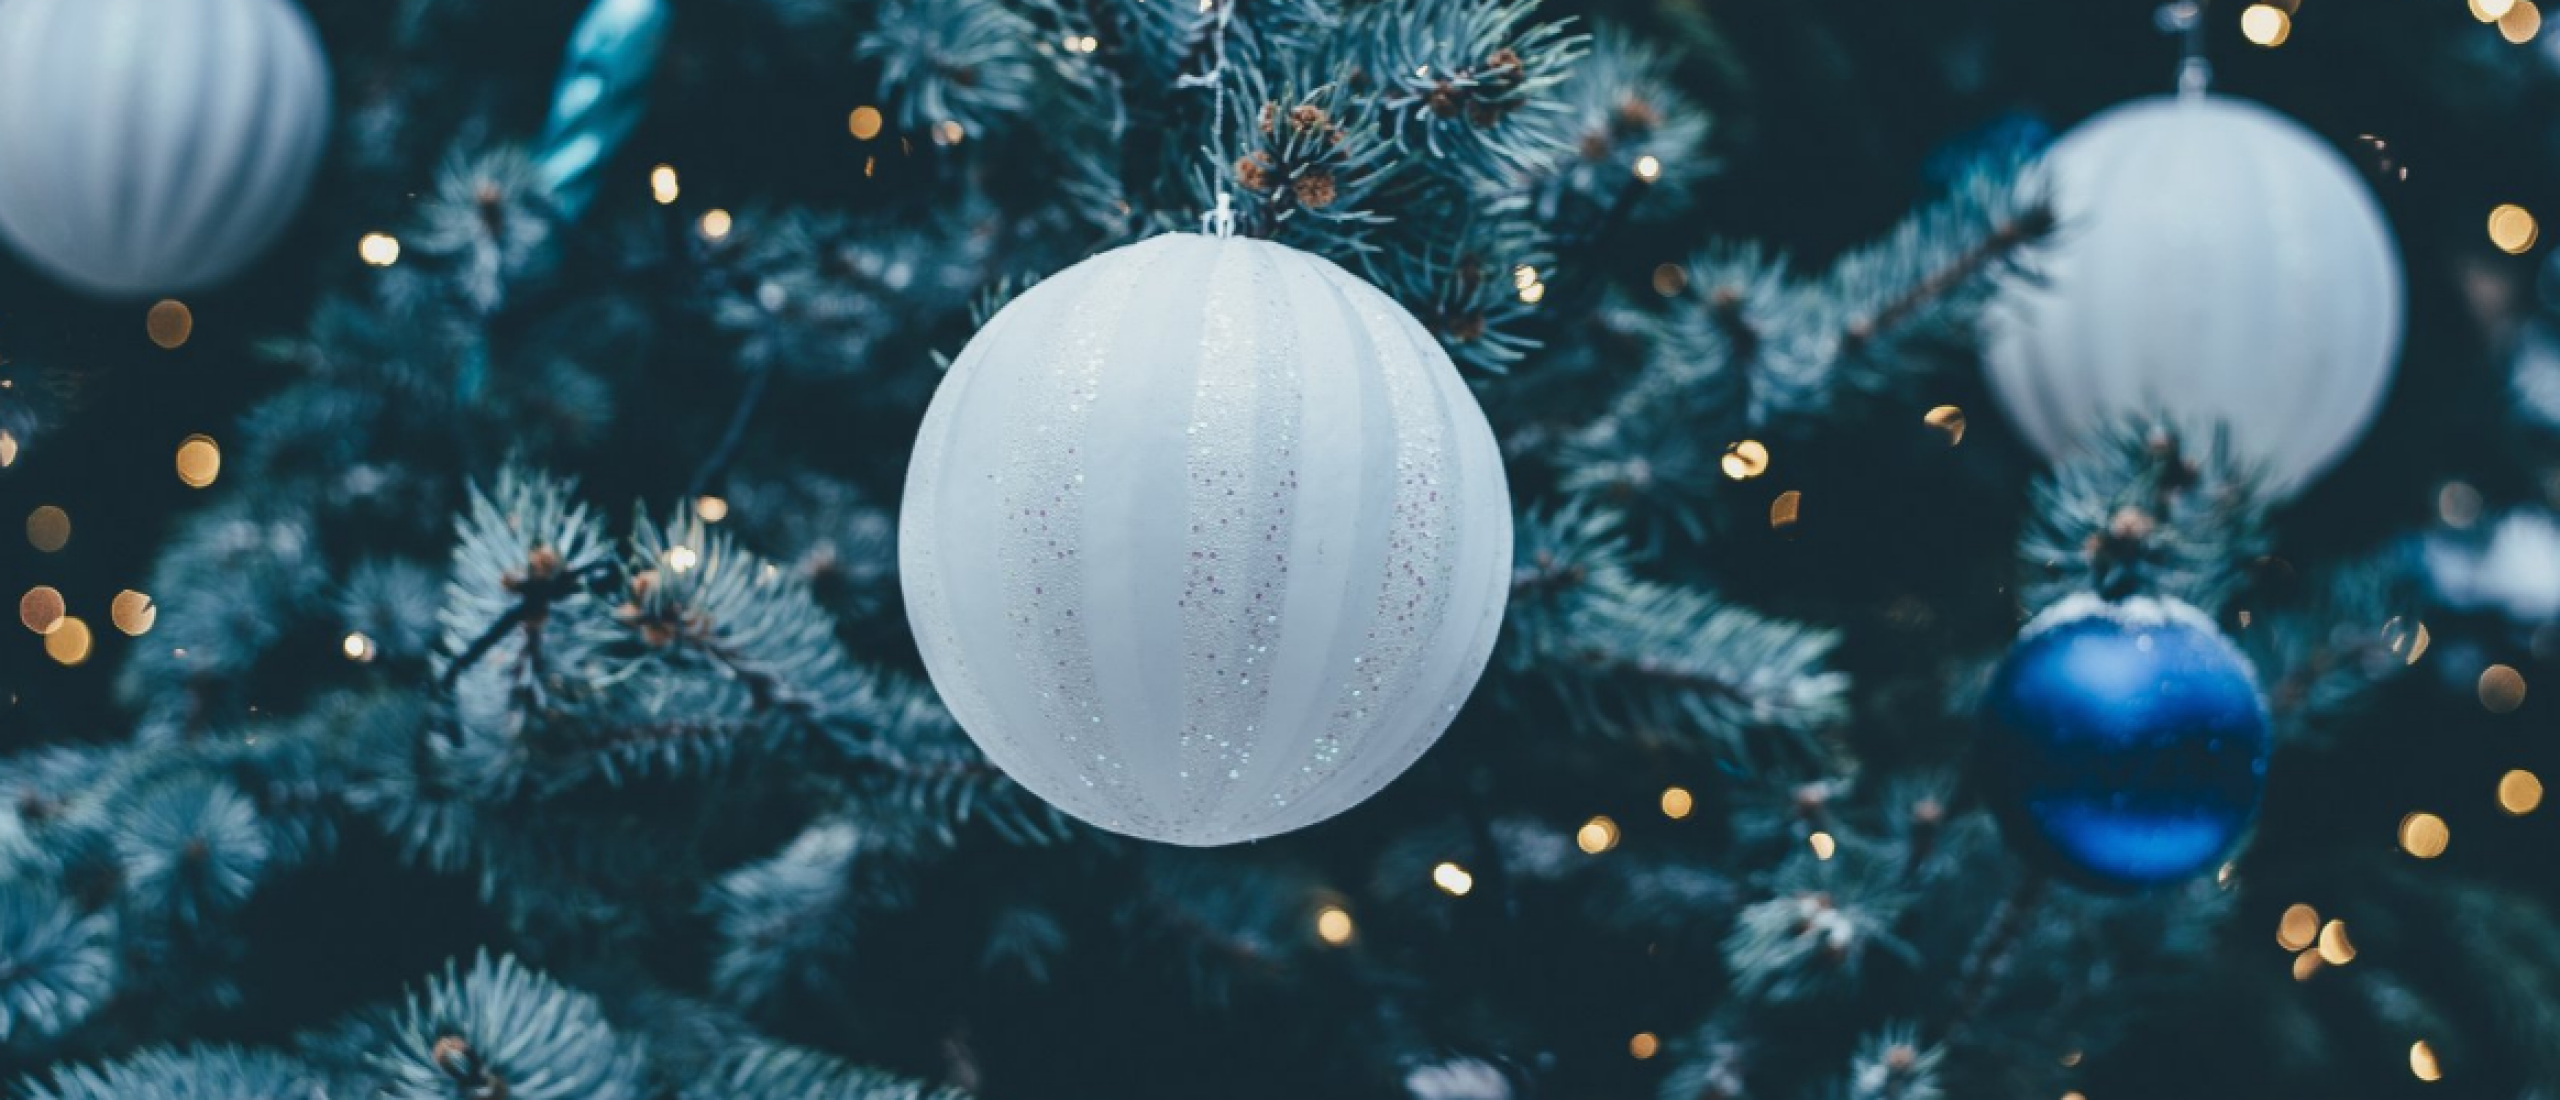 De spirituele betekenis van de kerstboom en bijzondere boommaan